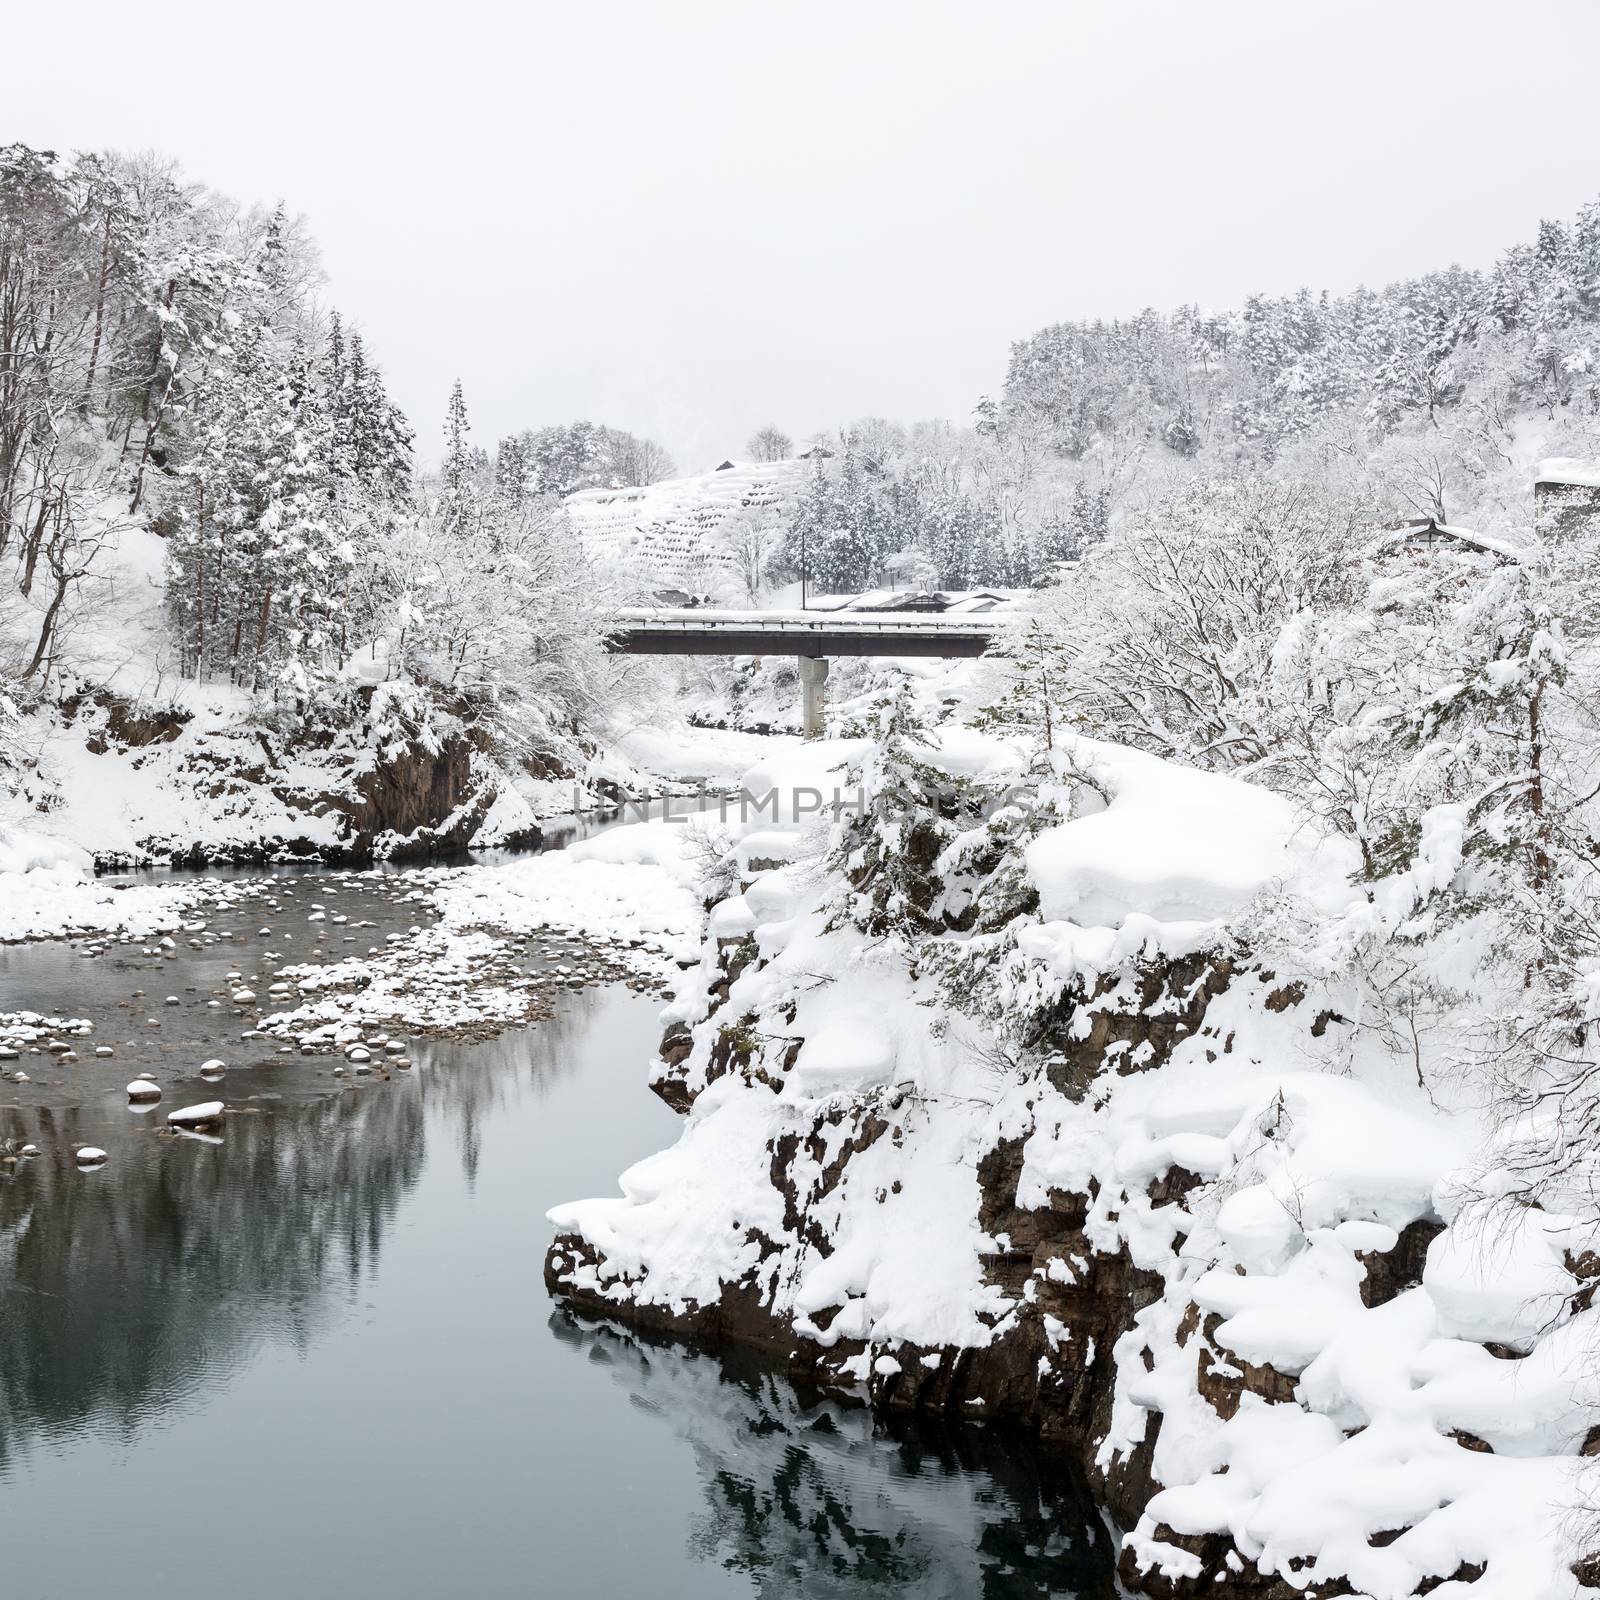 Shirakawago Japan Winter by vichie81